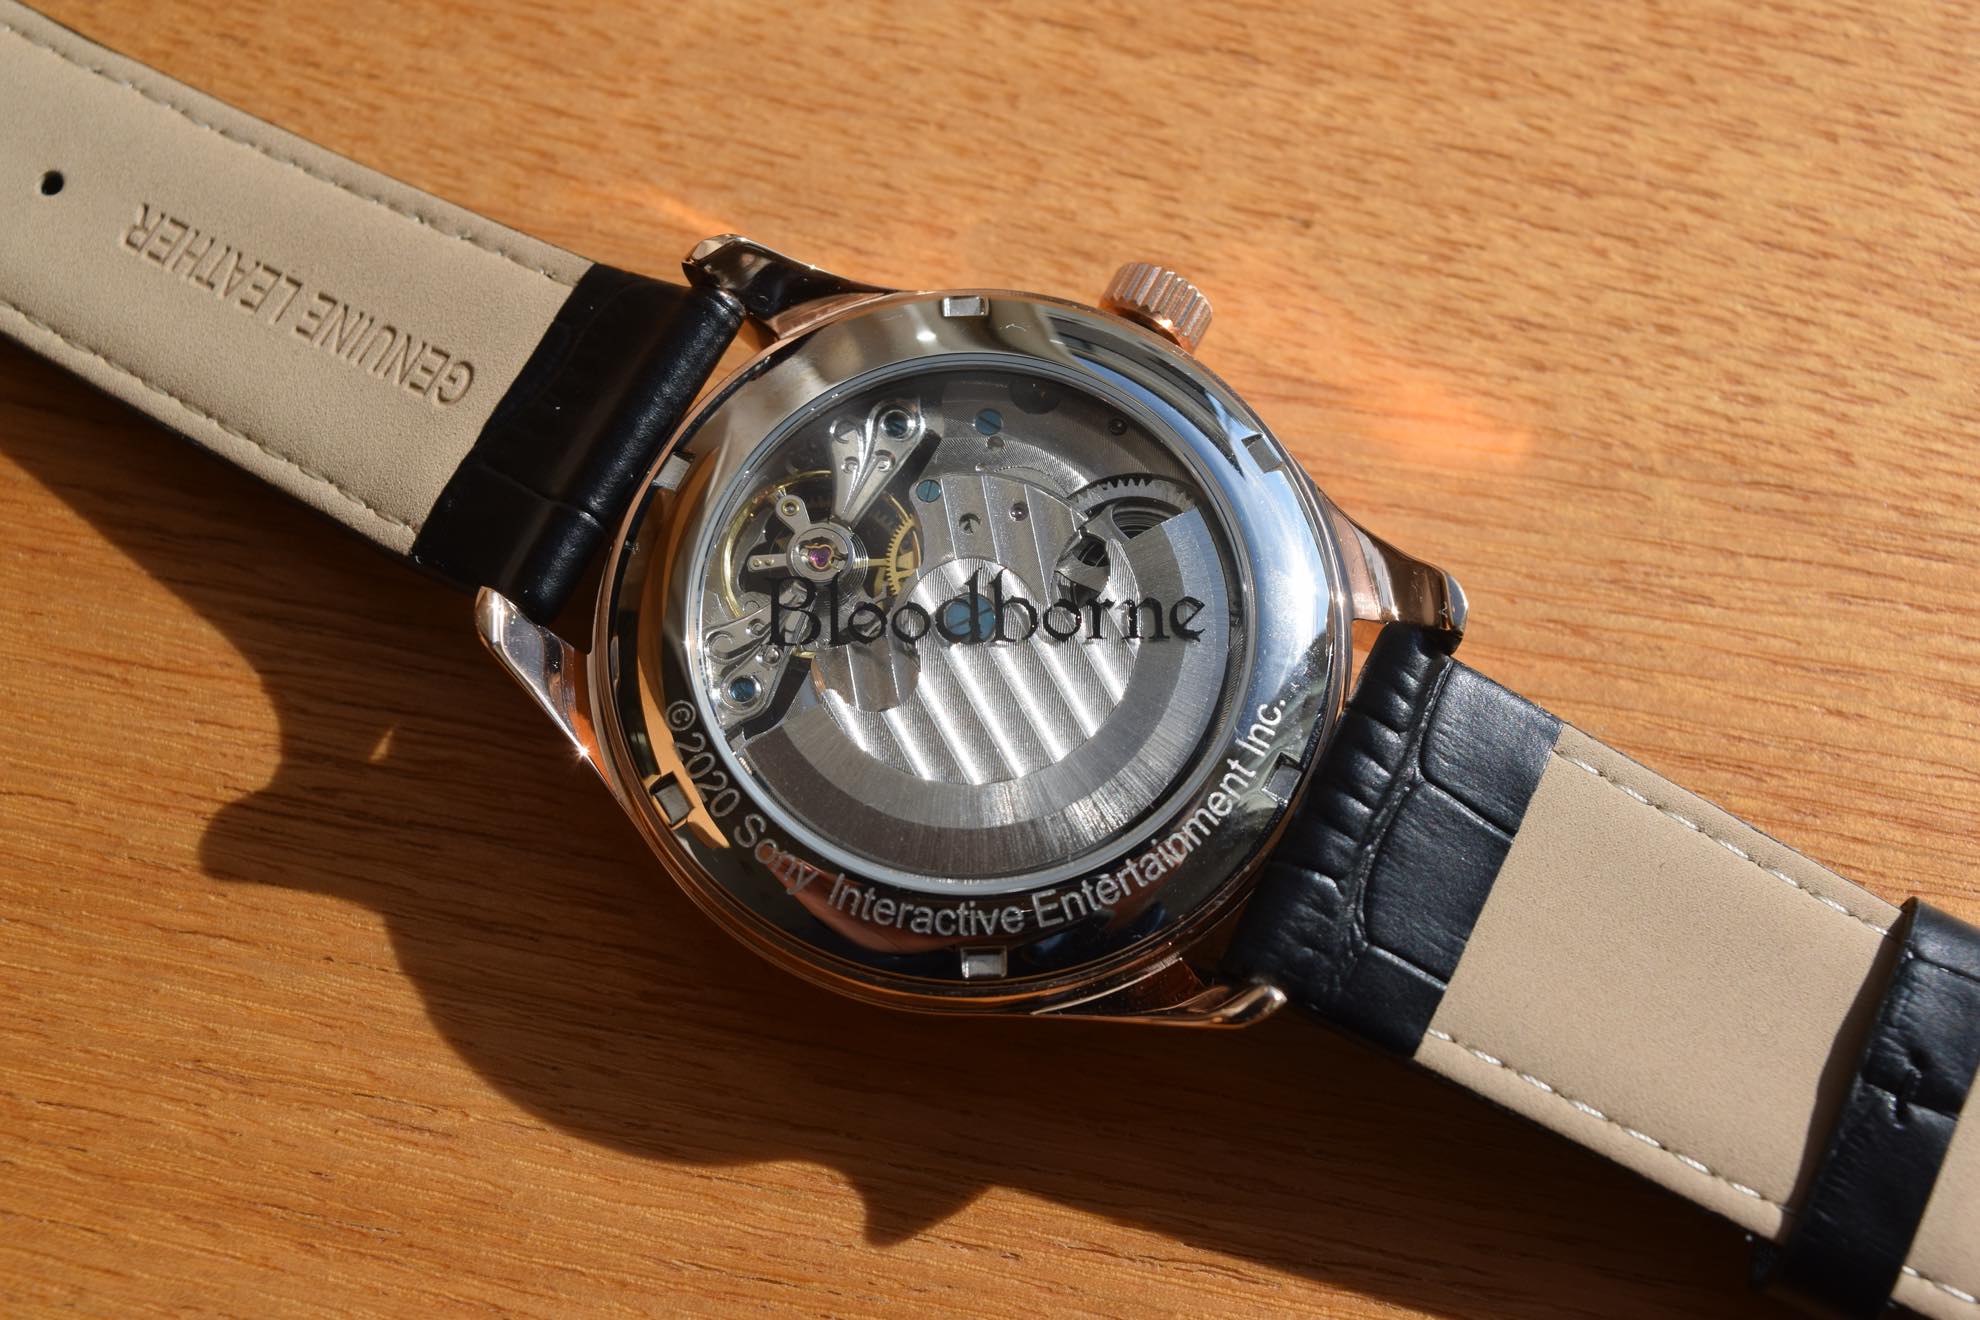 機械仕掛けの透ける盤面が美しい…『Bloodborne（ブラッドボーン）』モデルの腕時計【普段使いしたいゲームグッズ】_007